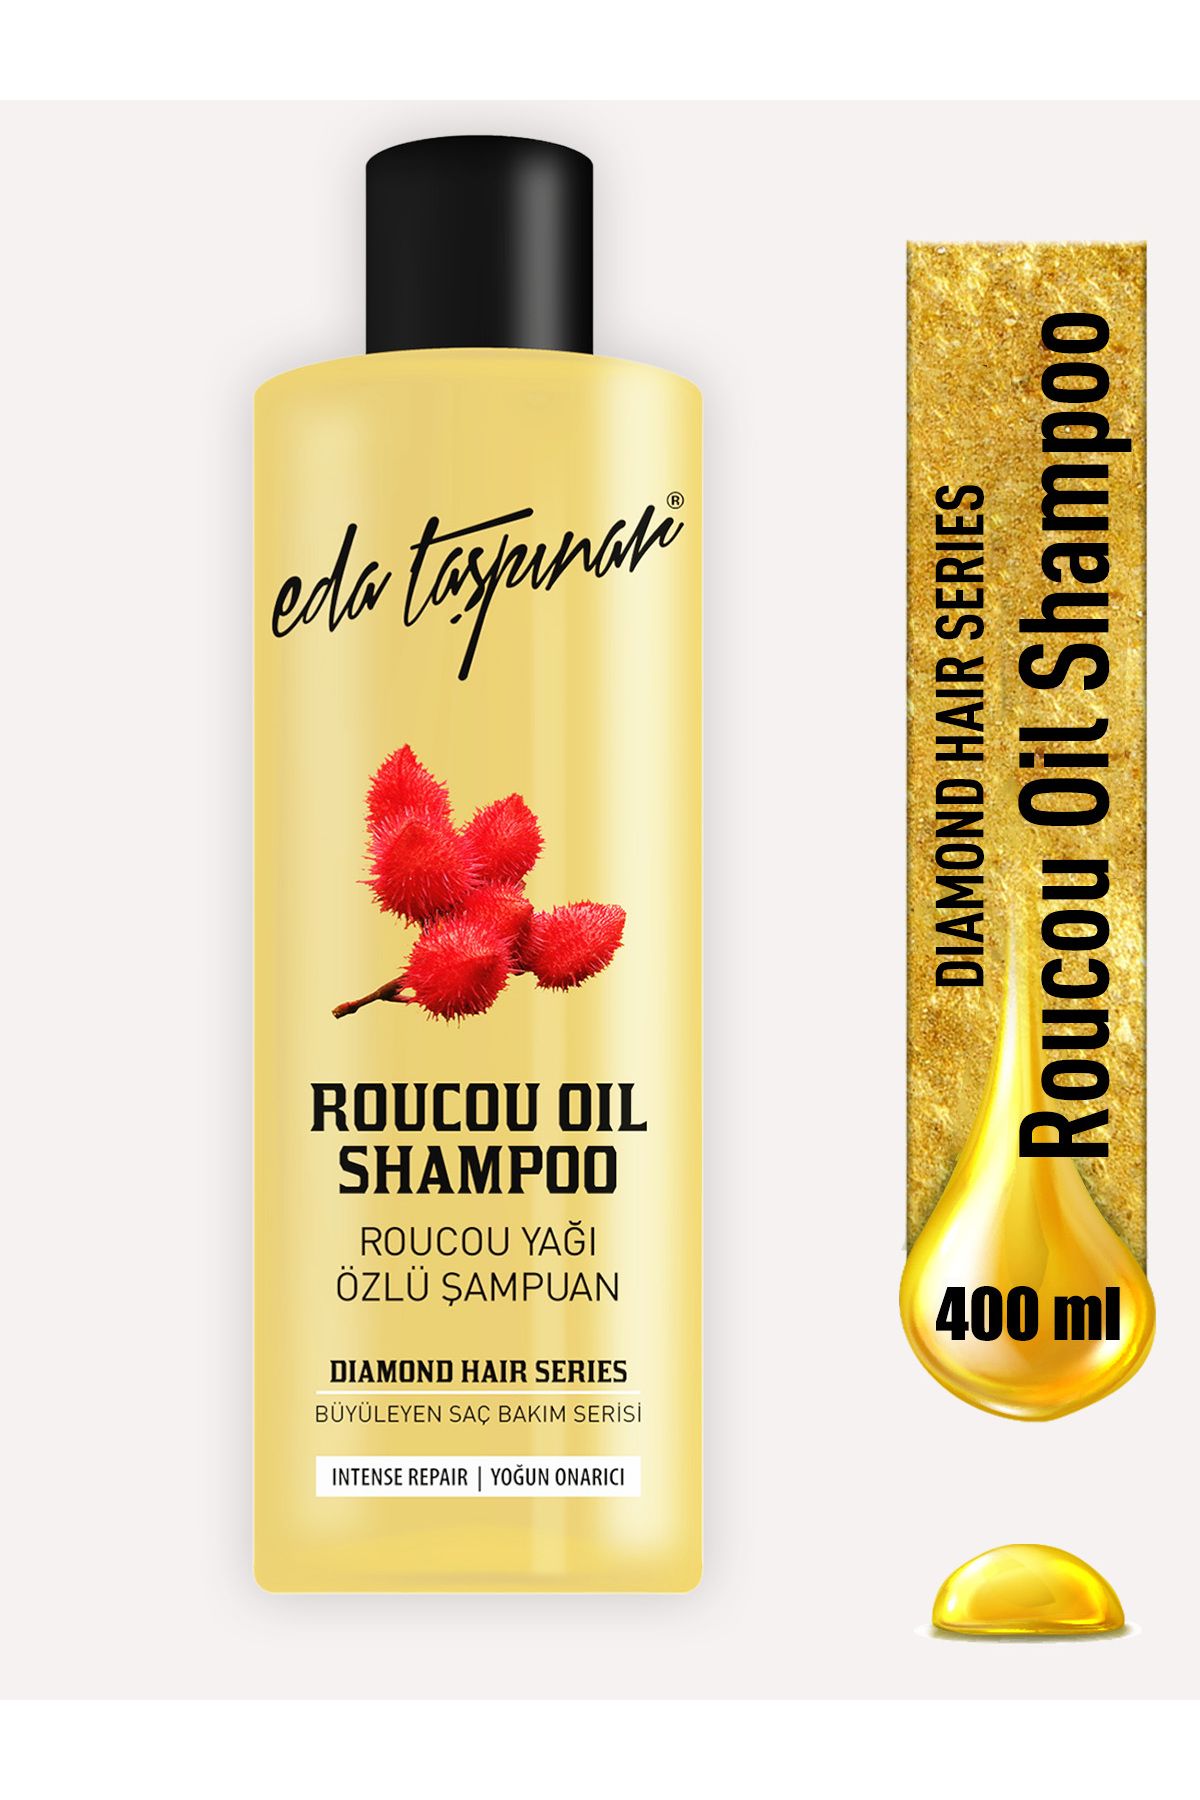 Eda Taşpınar Roucou Oil Roucou Yağı Şampuanı Yoğun Onarıcı 400ml.